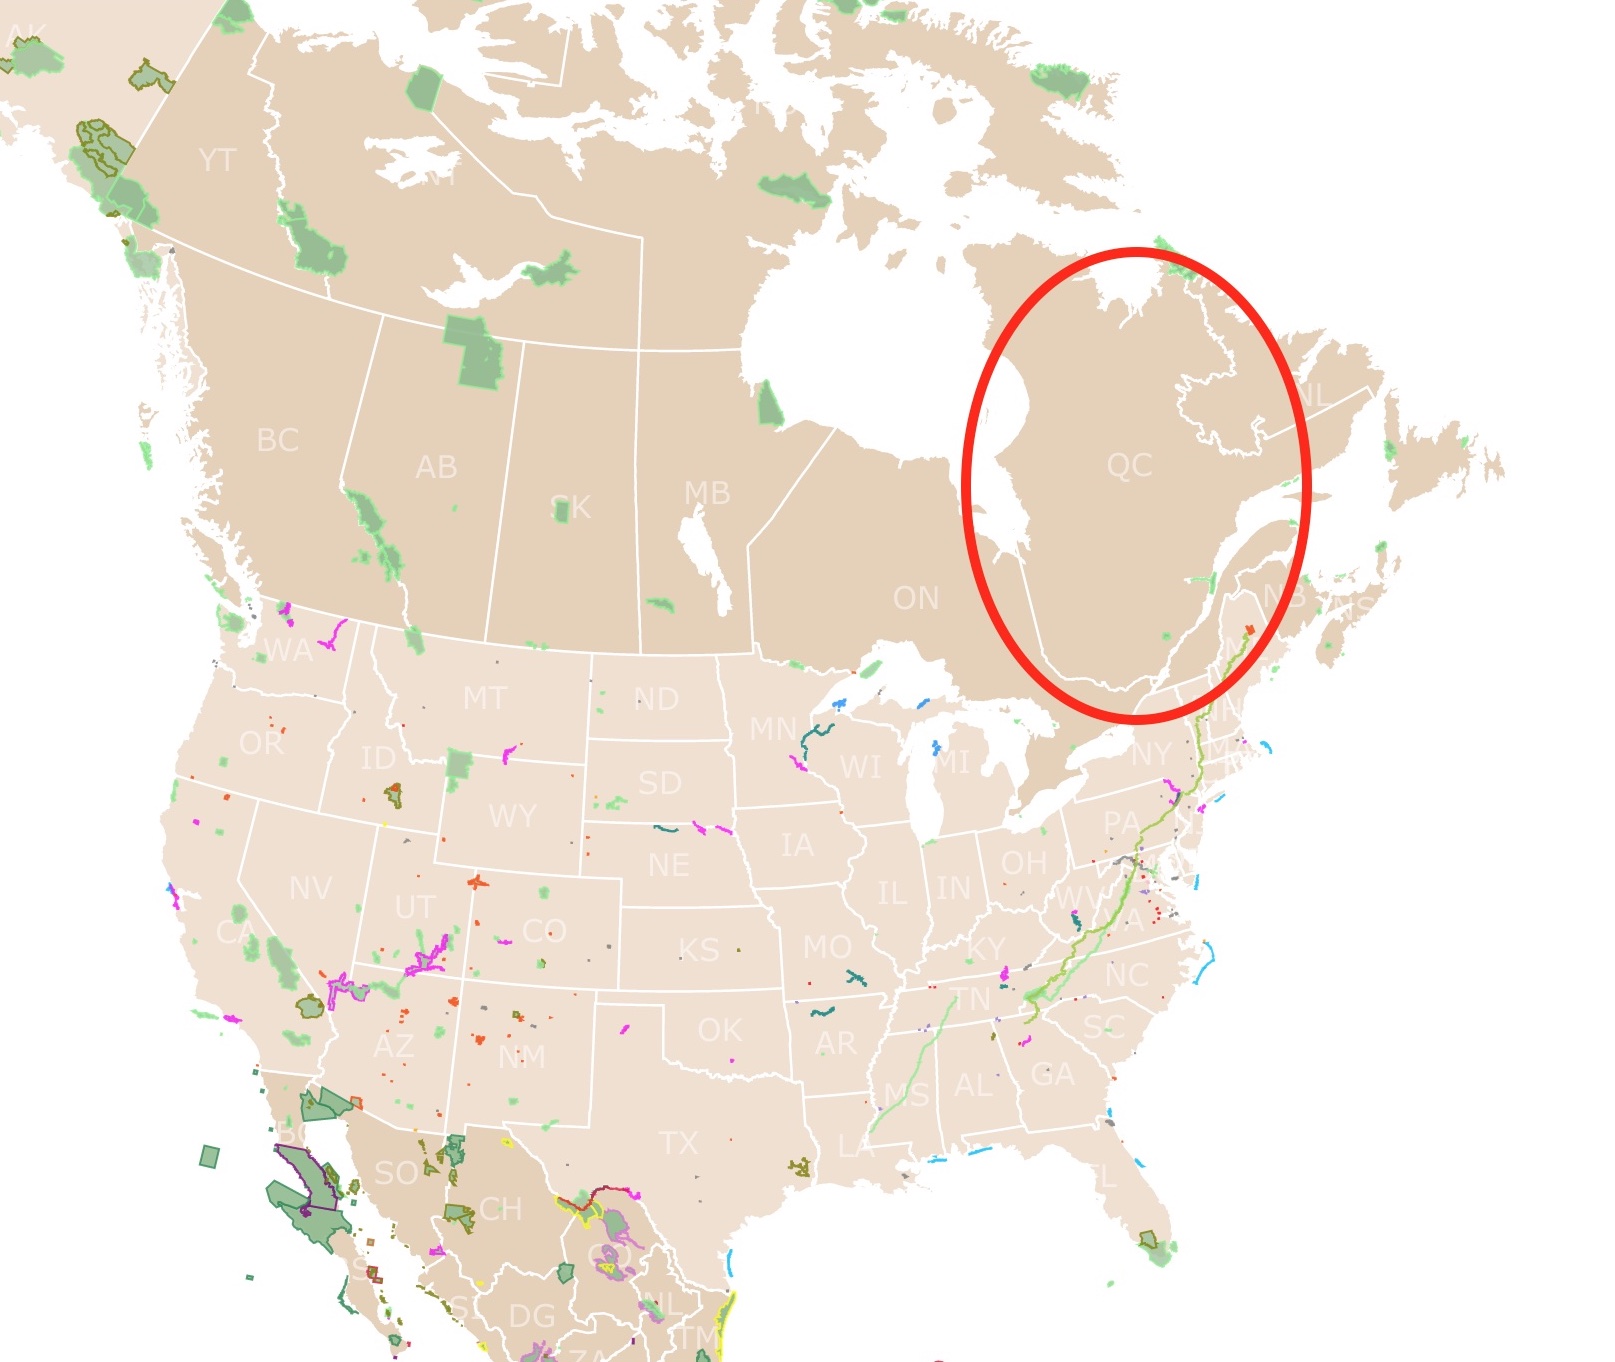 Quebec location in north America